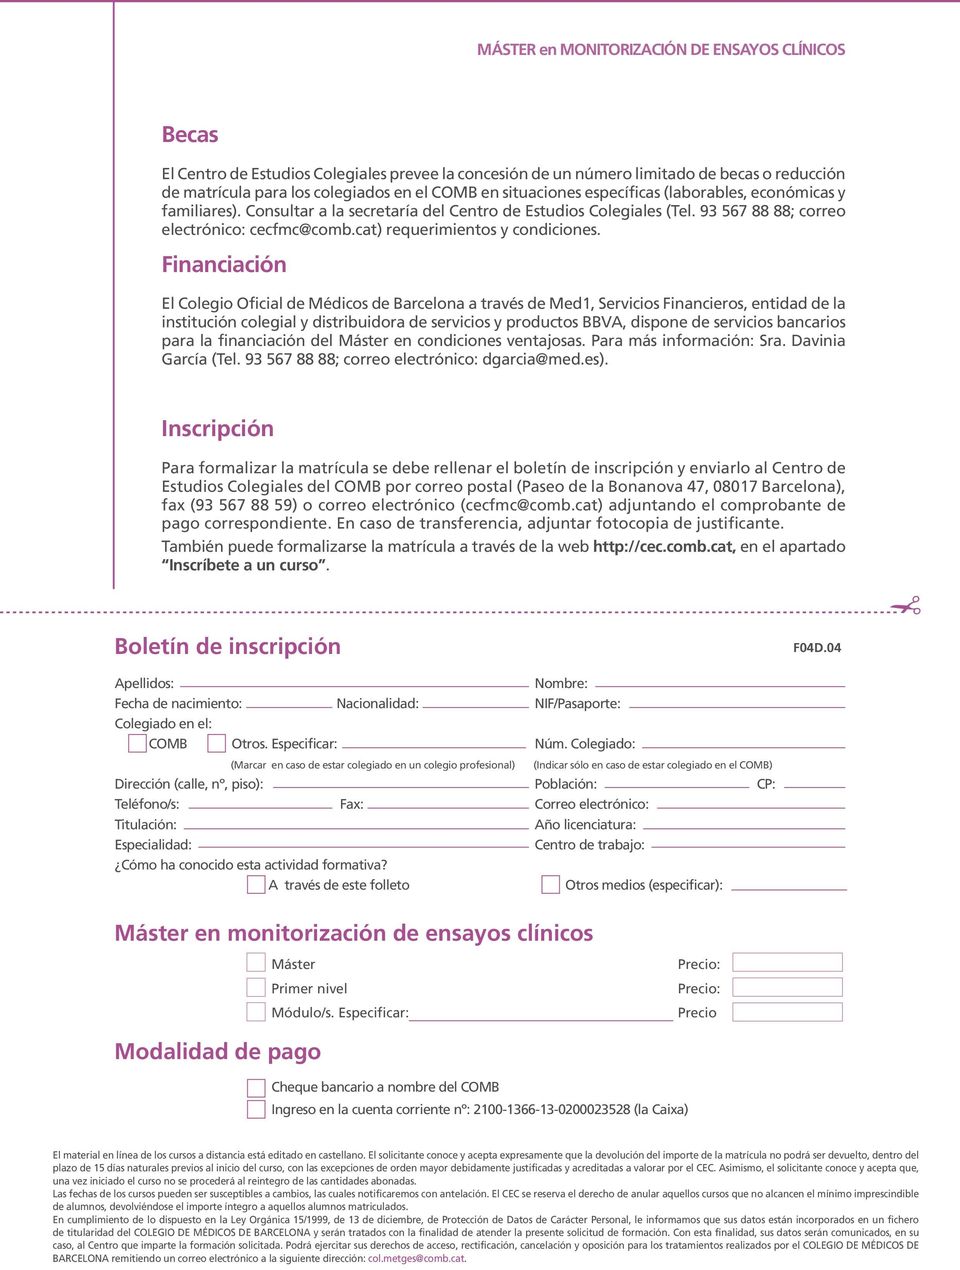 Financiación El Colegio Oficial de Médicos de Barcelona a través de Med1, Servicios Financieros, entidad de la institución colegial y distribuidora de servicios y productos BBVA, dispone de servicios